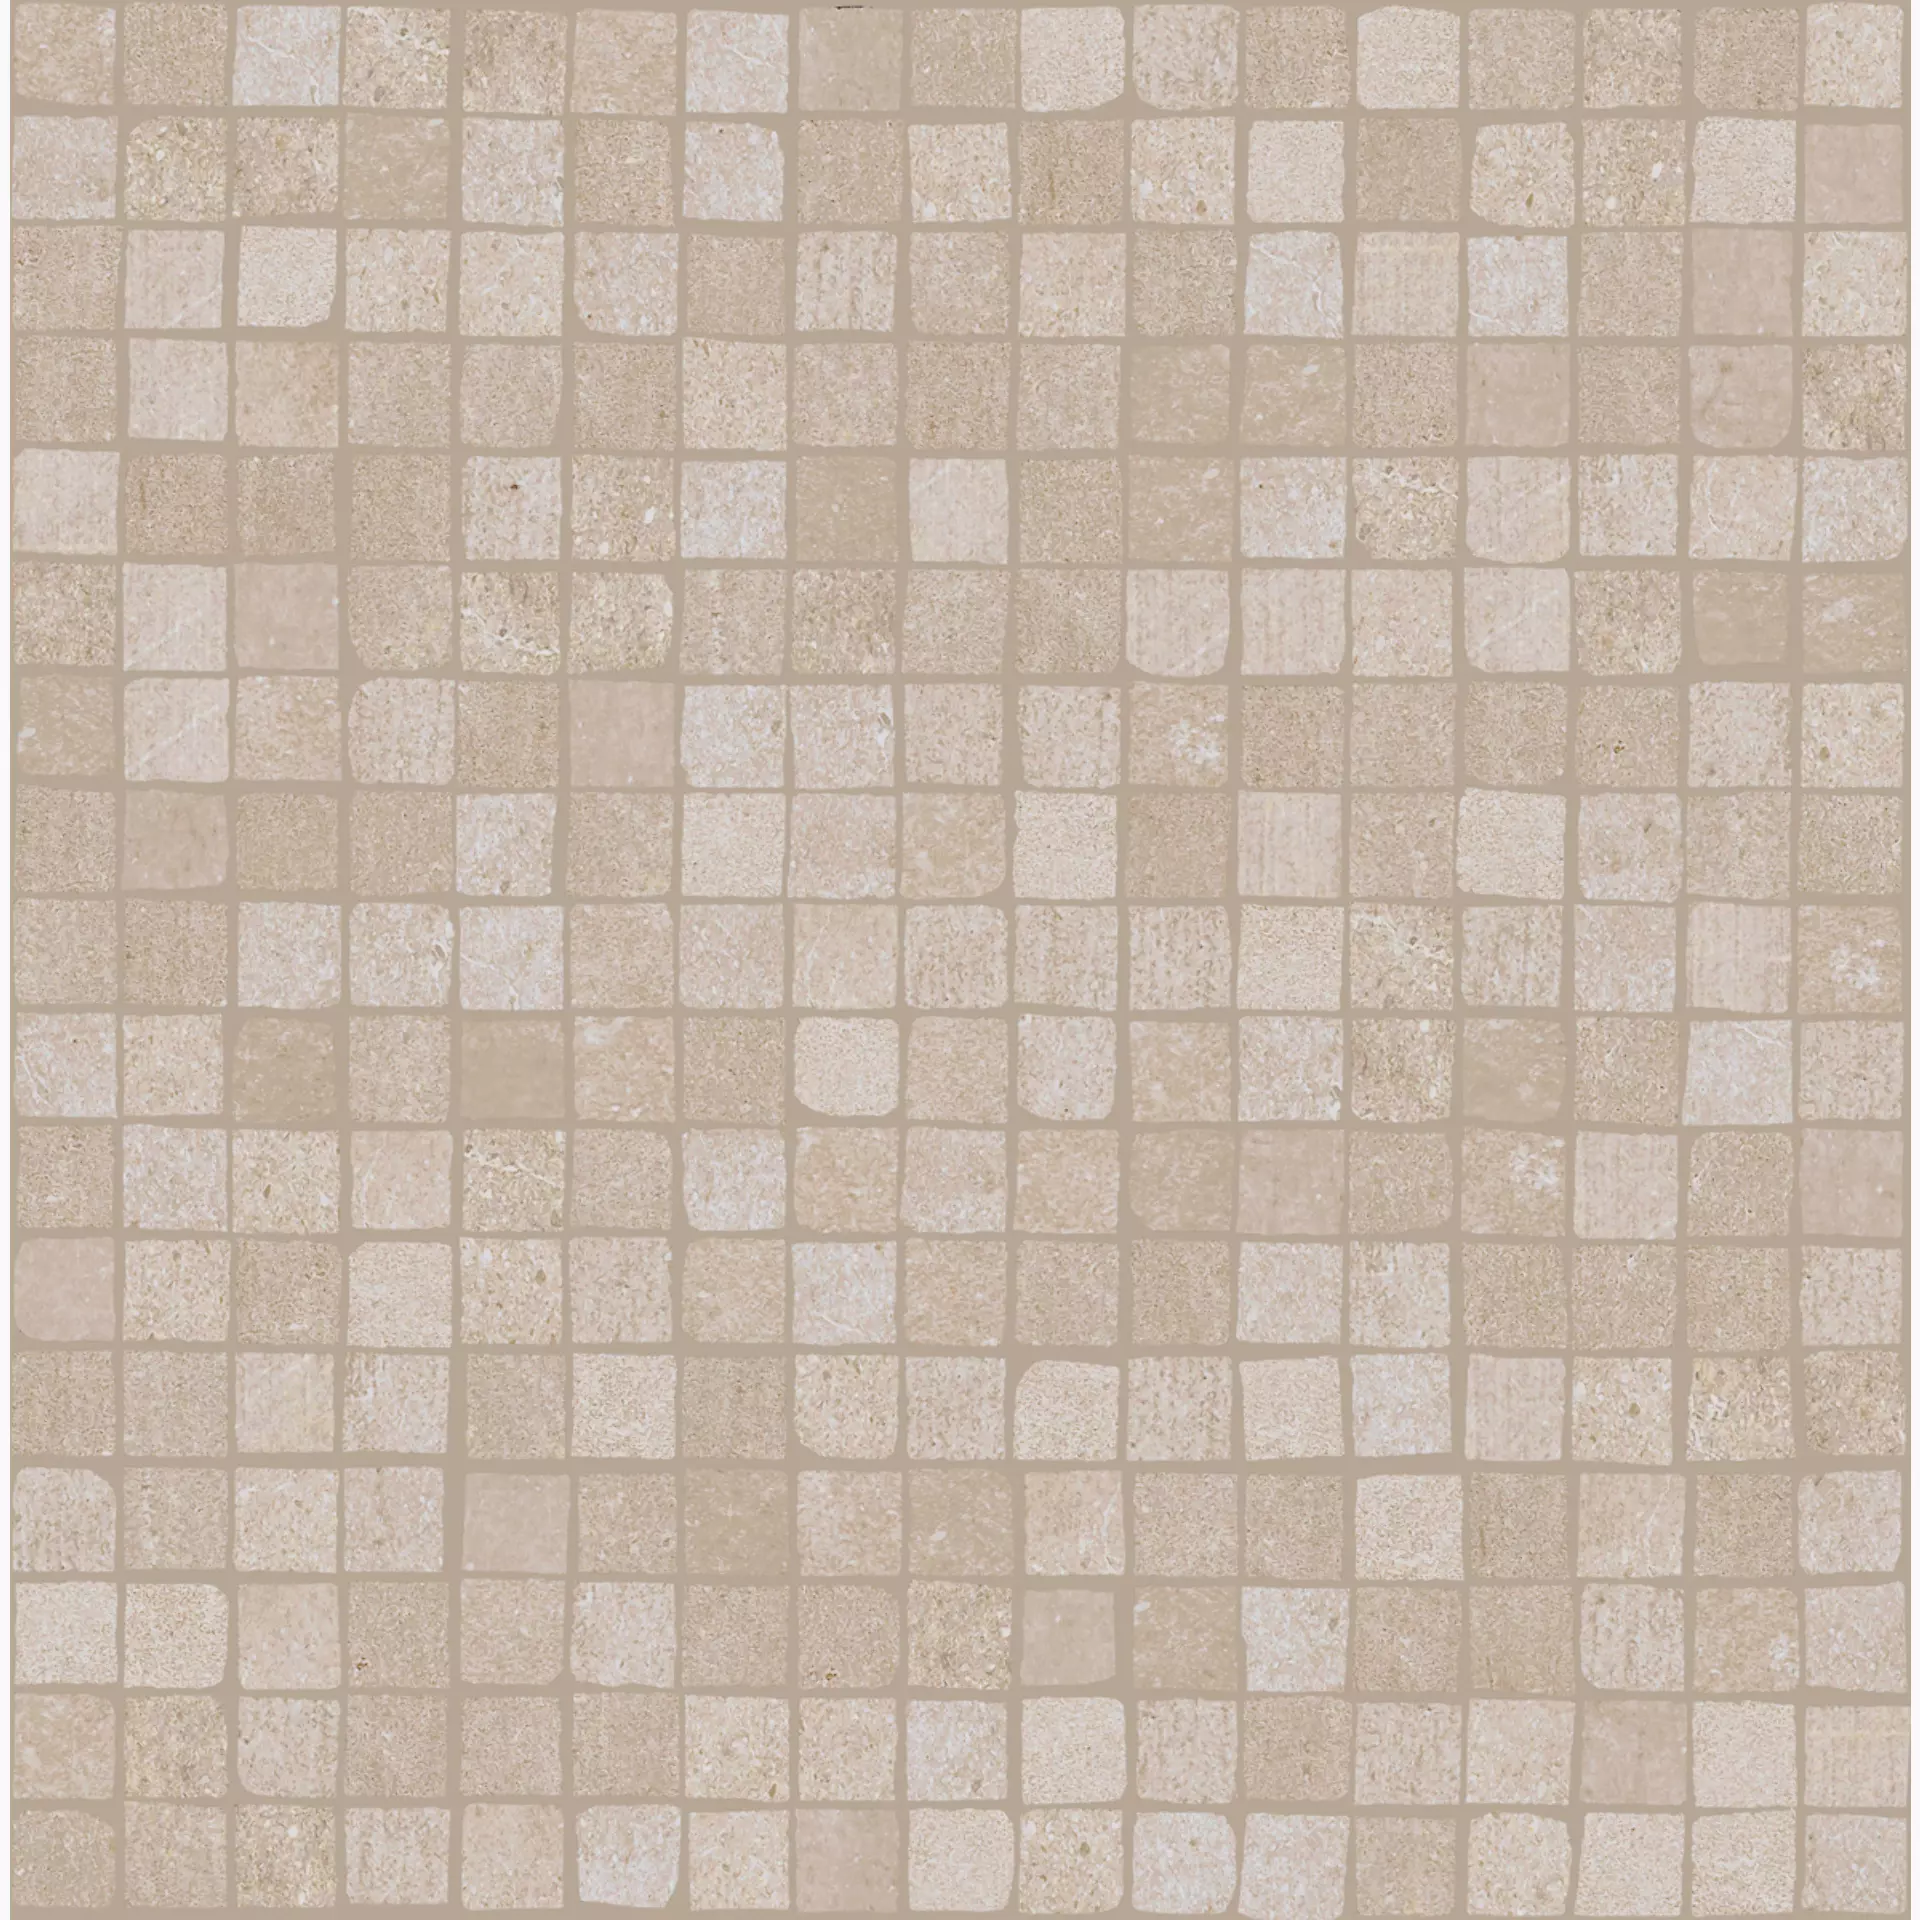 Bodenfliese,Wandfliese Marazzi Plaster Sand Naturale – Matt Sand MMCH matt natur 30x30cm Mosaik 9,5mm